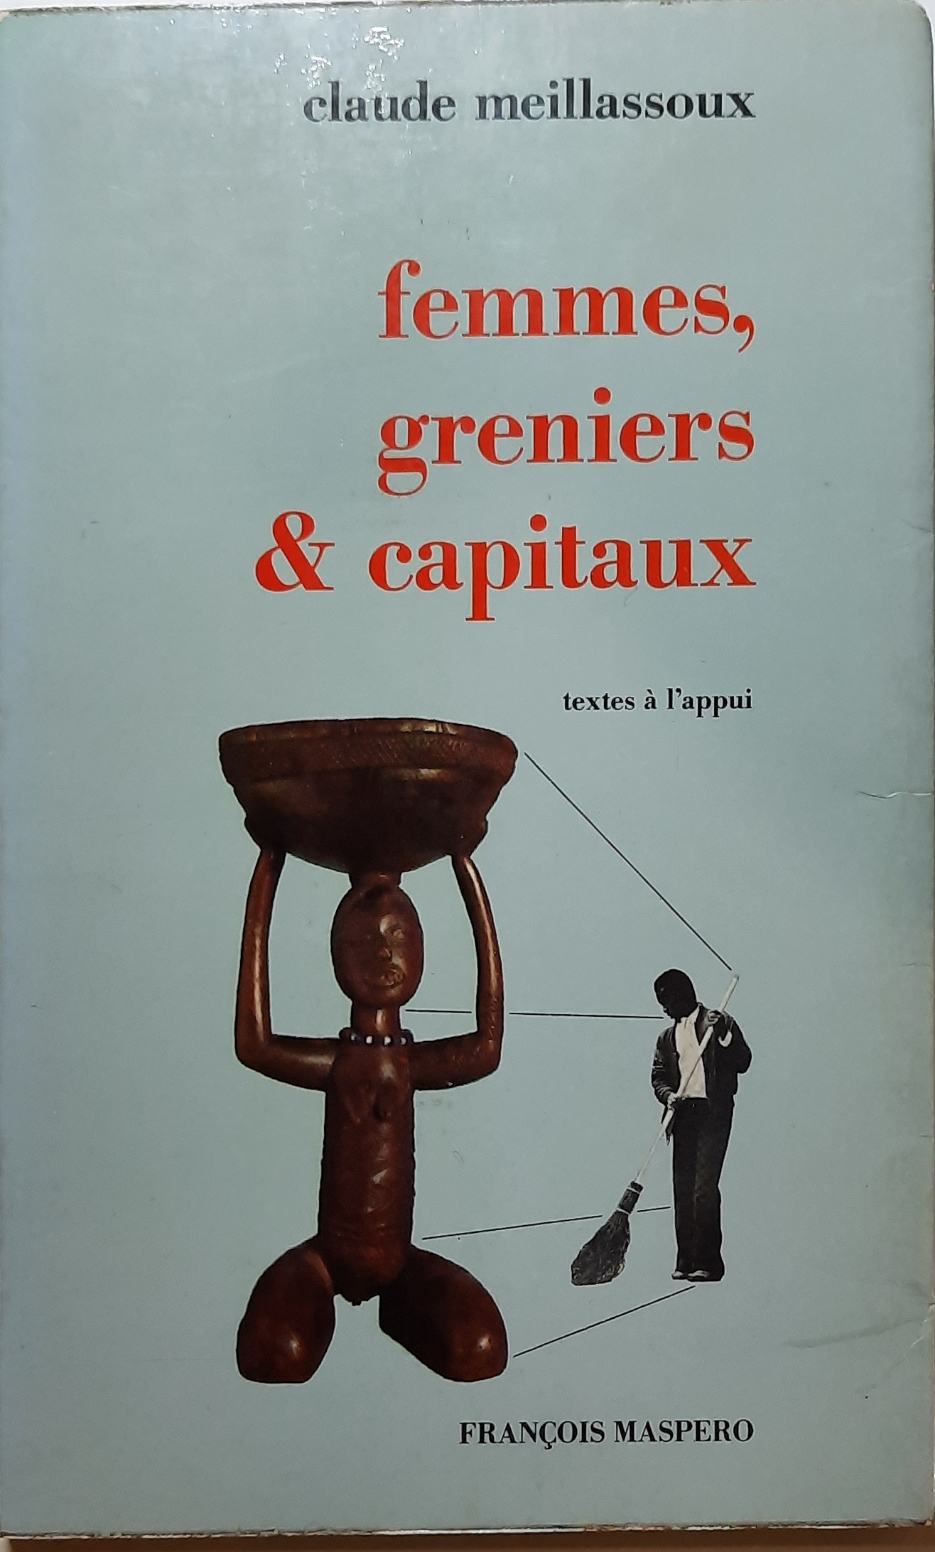 Book cover 202105320095: MEILLASSOUX Claude | Femmes, greniers & capitaux - textes à l